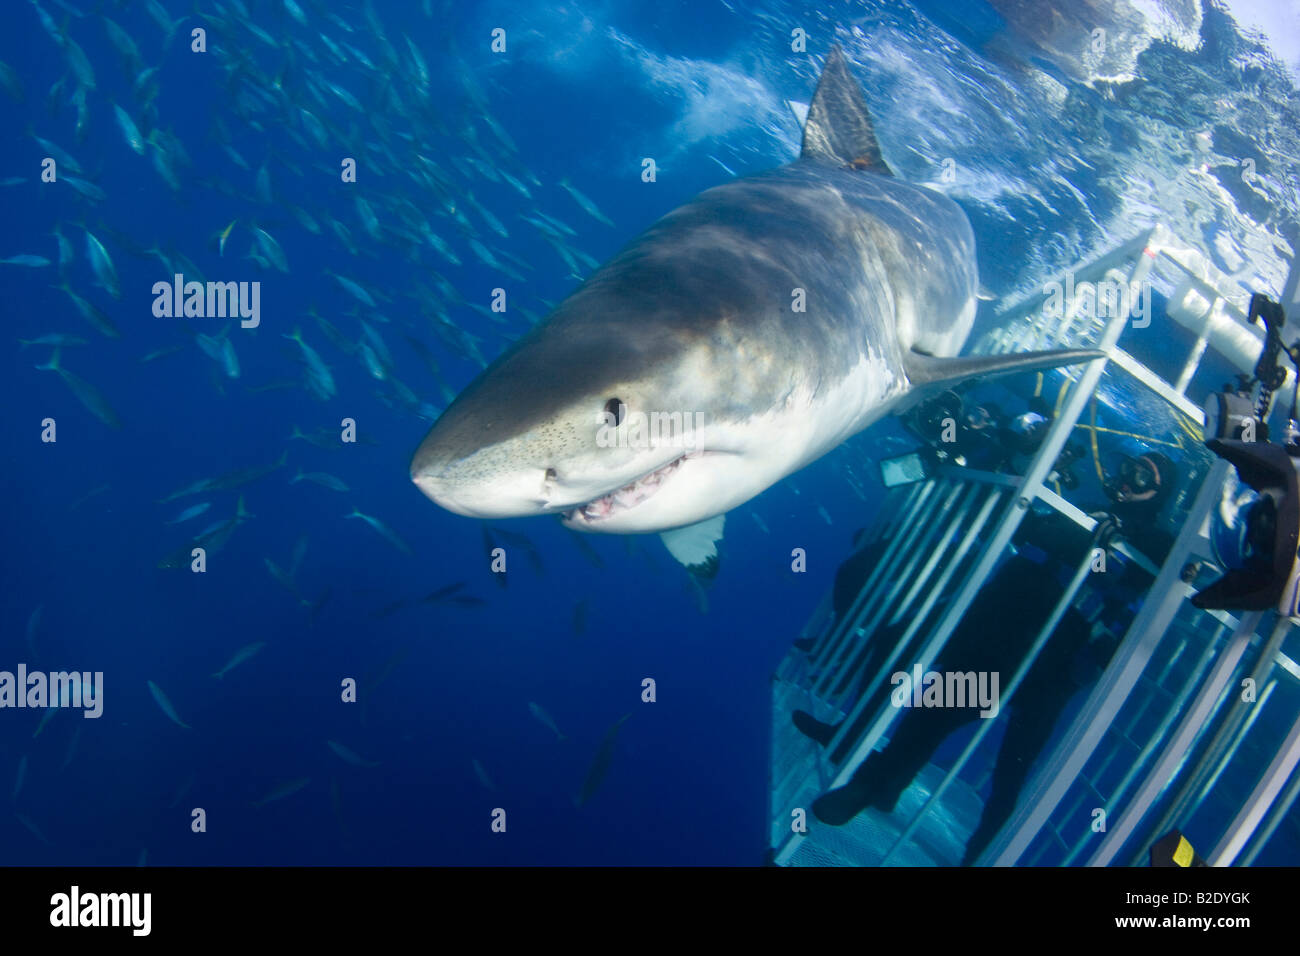 Les plongeurs dans une cage Obtenez un aperçu détaillé d'un grand requin blanc, Carcharodon carcharias, au large de l'île de Guadalupe, au Mexique. Banque D'Images